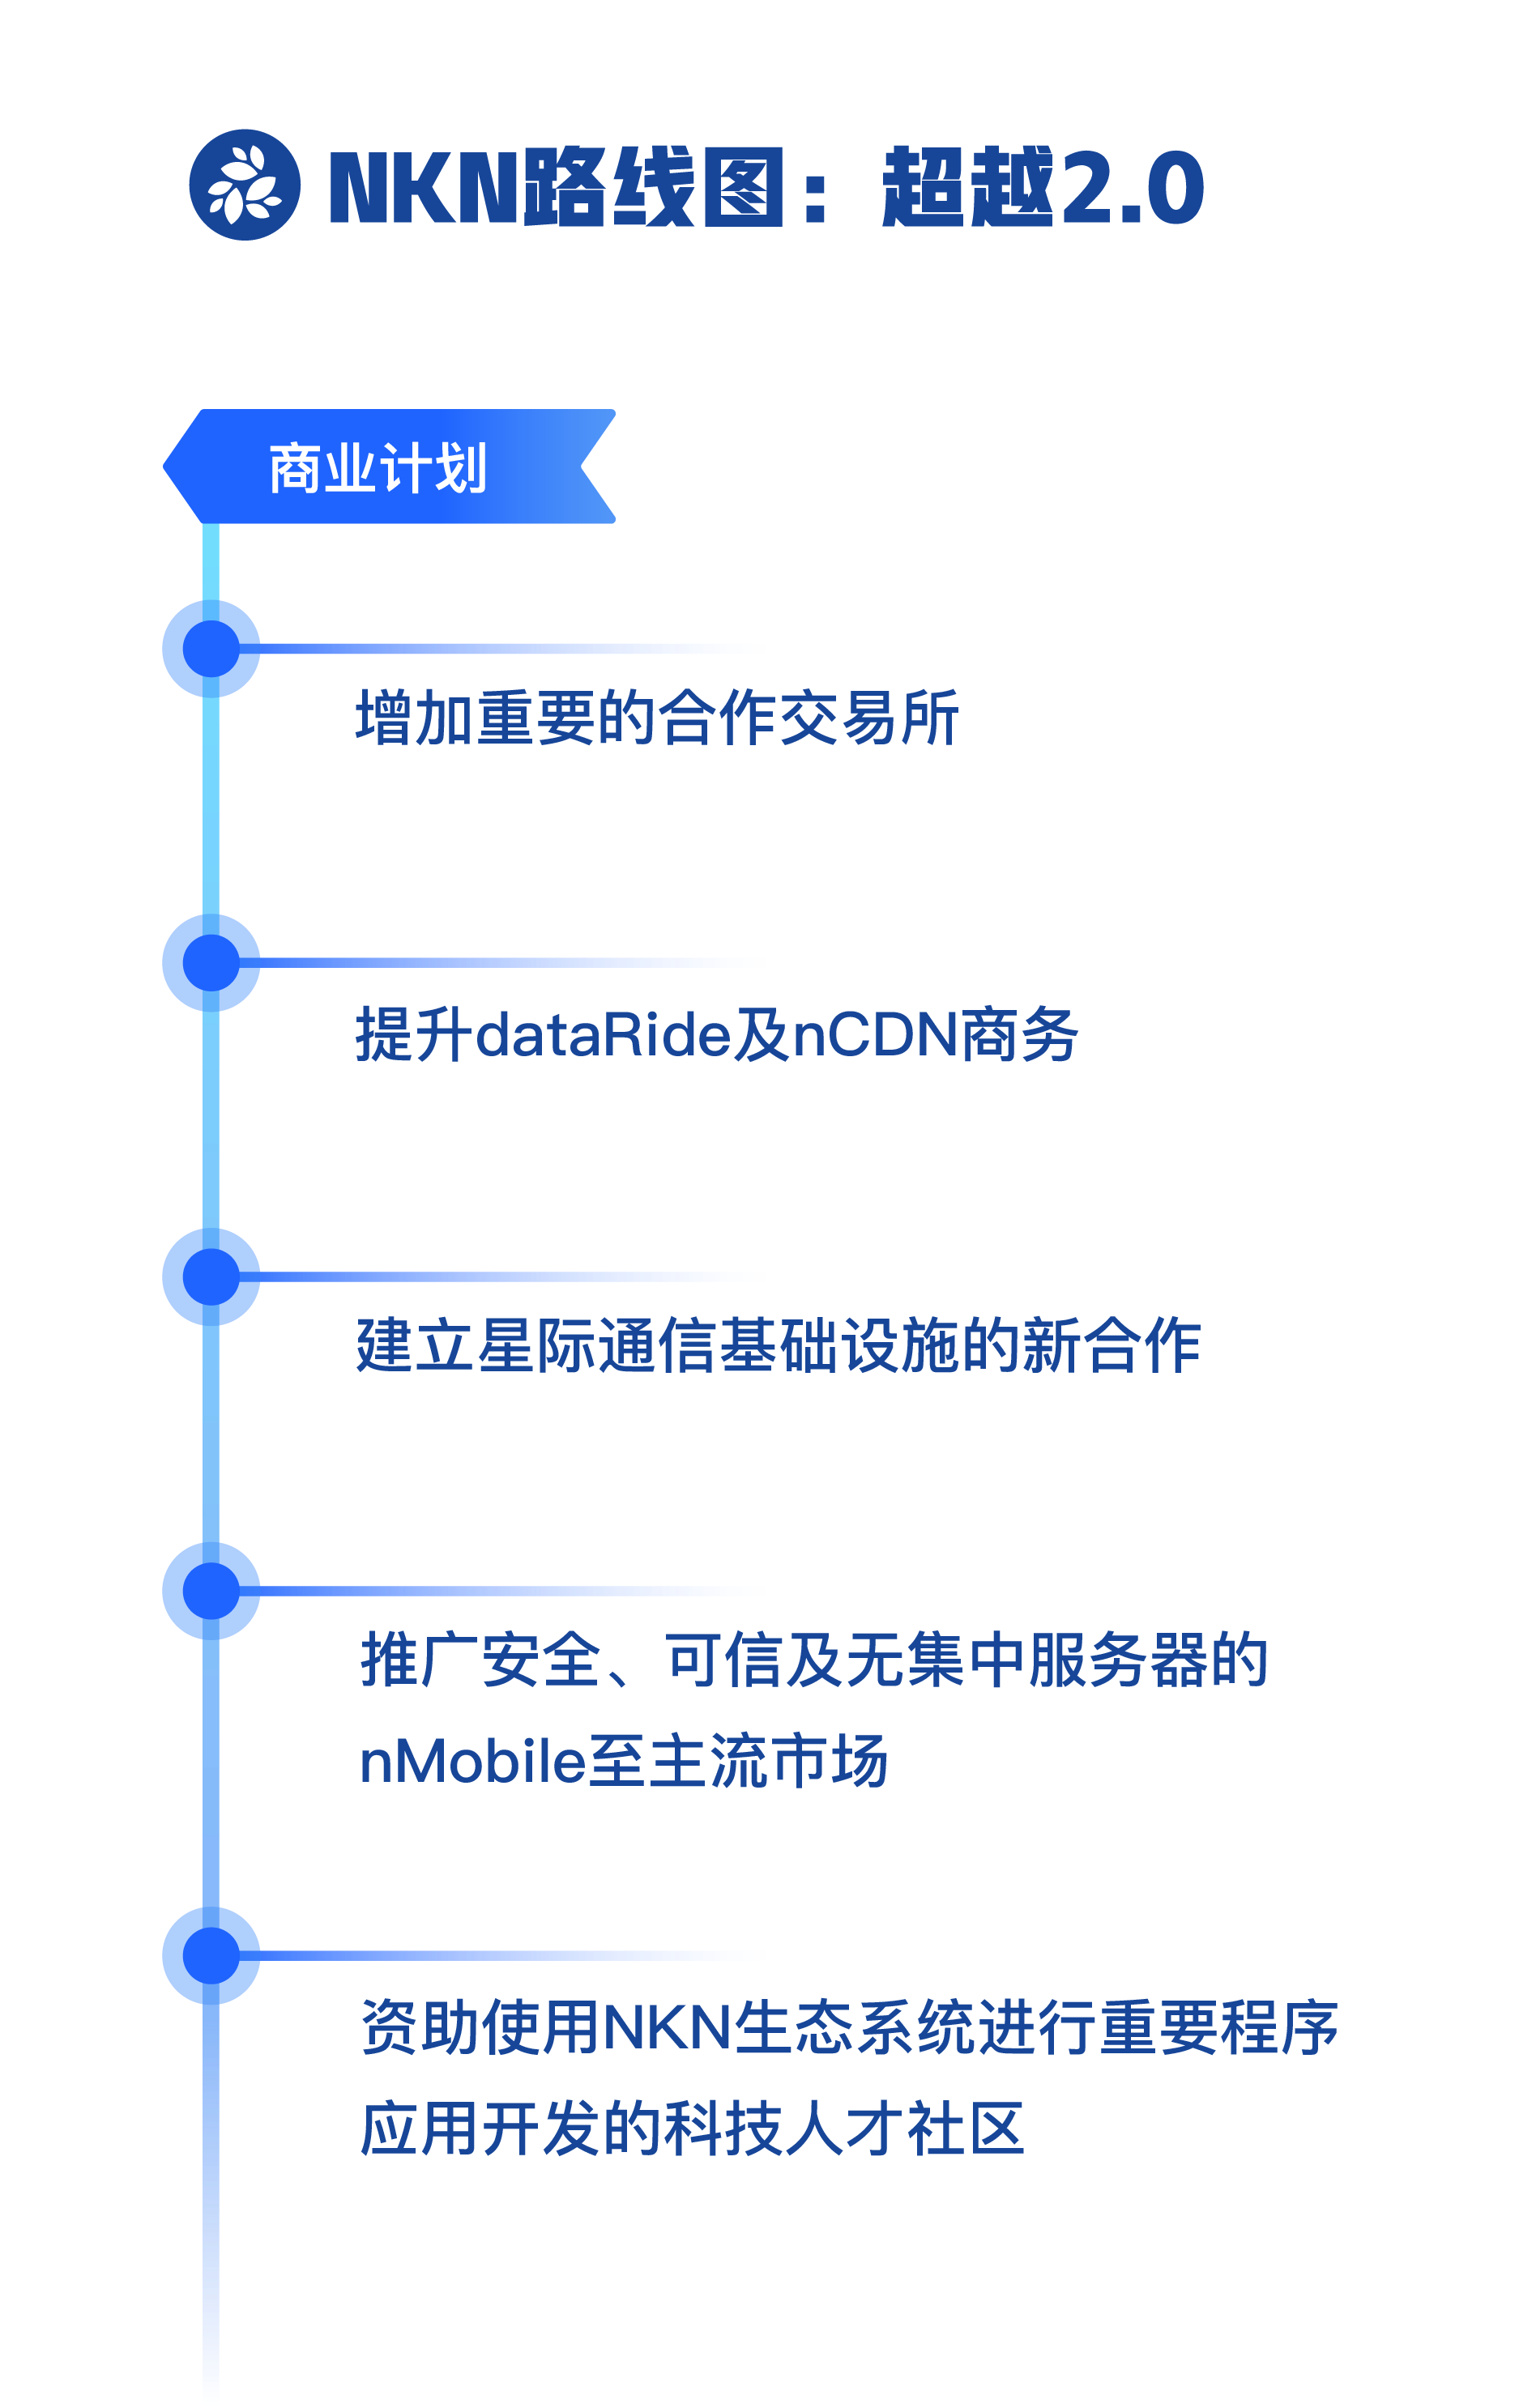 Roadmap CHI w:back C